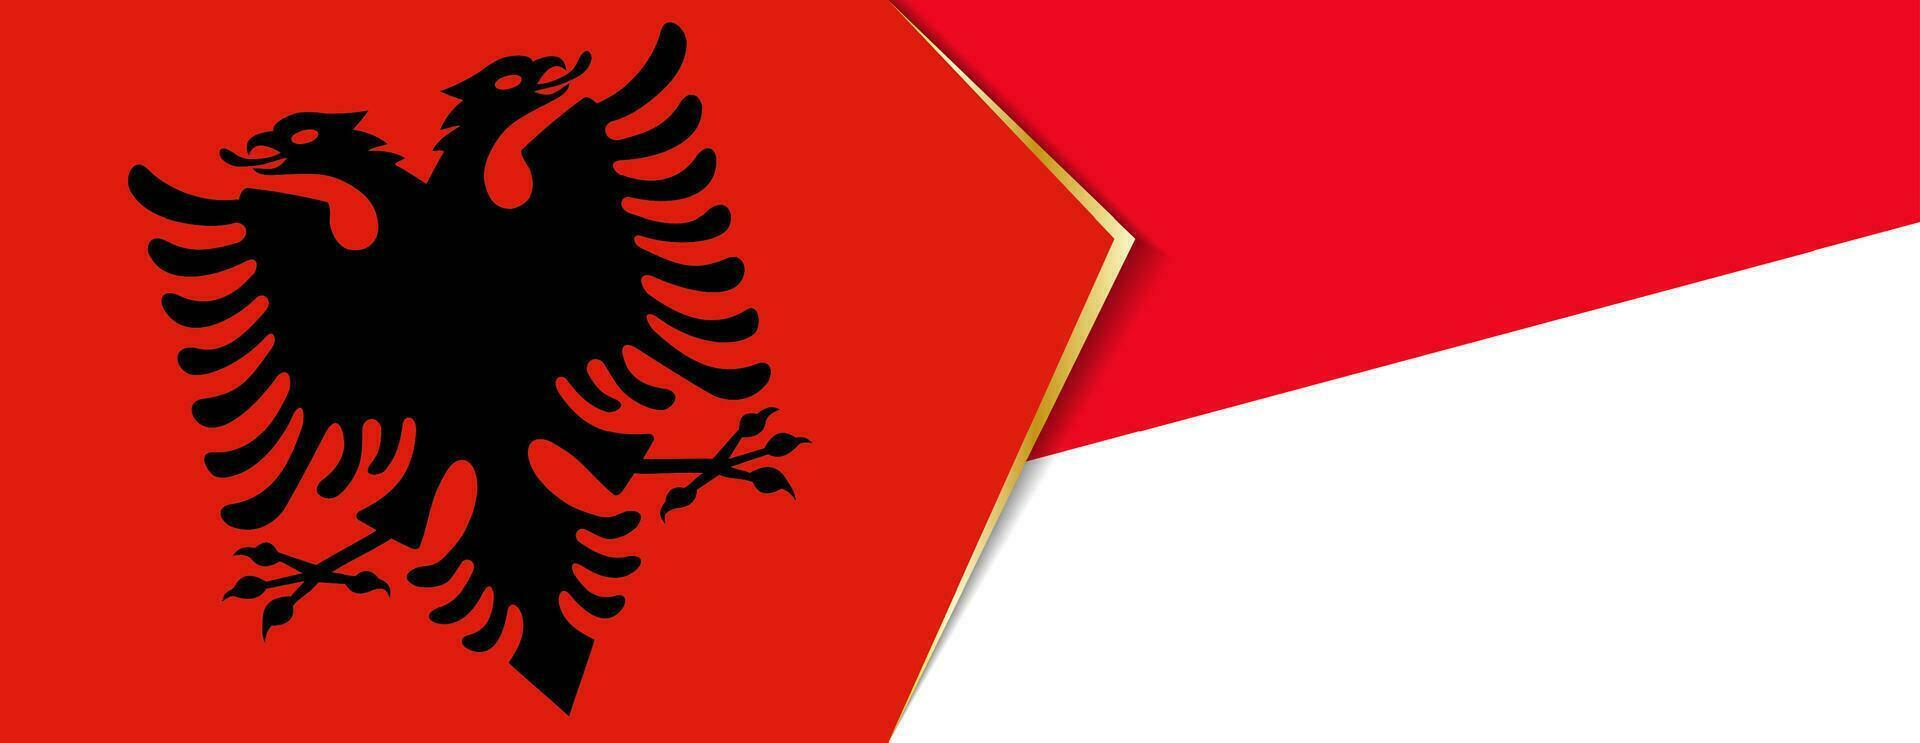 albania och Monaco flaggor, två vektor flaggor.